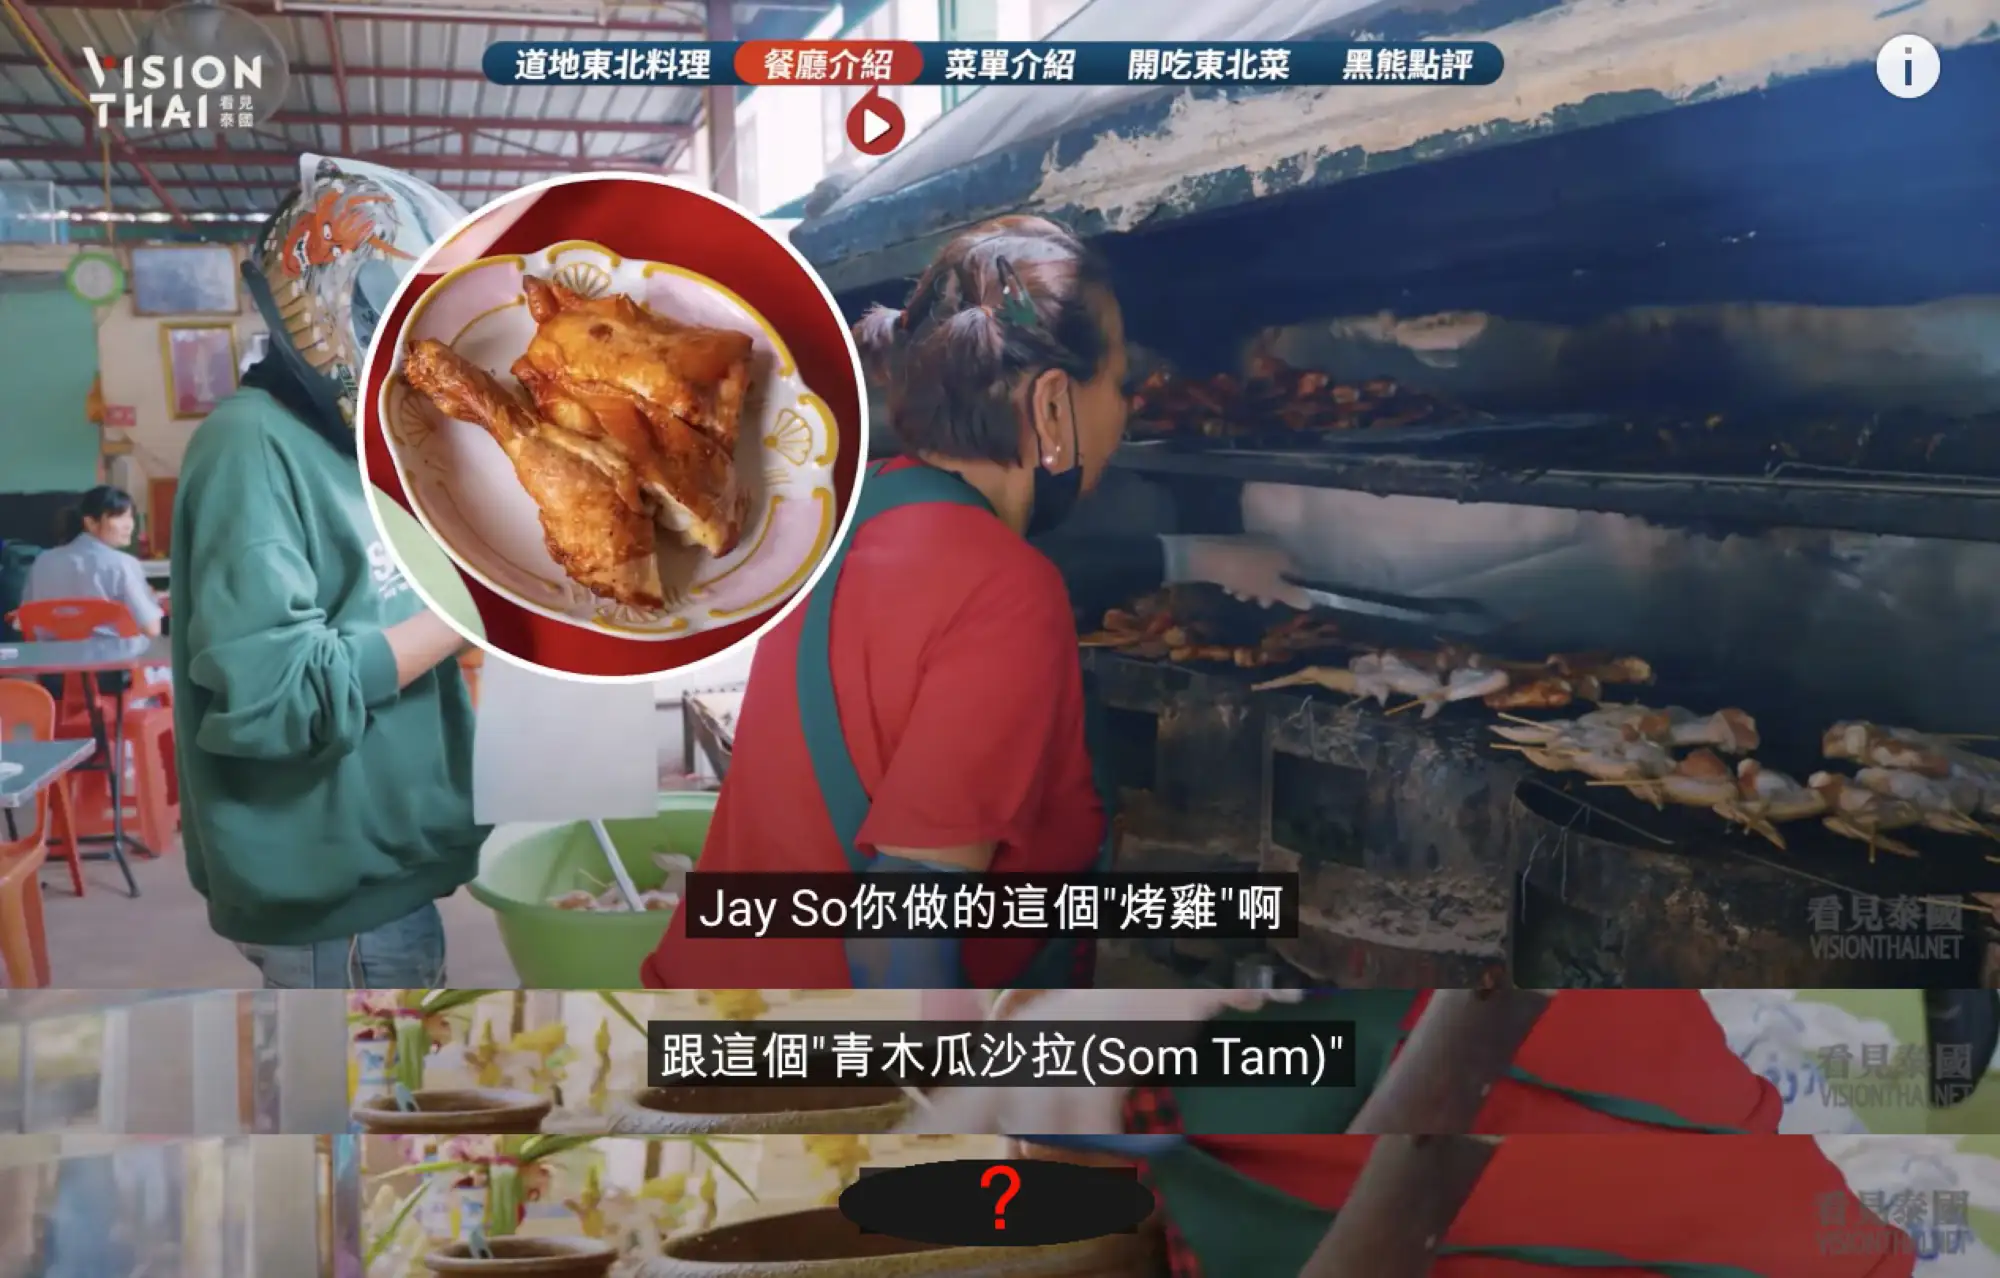 客人说了什么，让老板转型开这家Som Tam Jay So餐厅？（图片来源：黑熊V泰国视频截图）